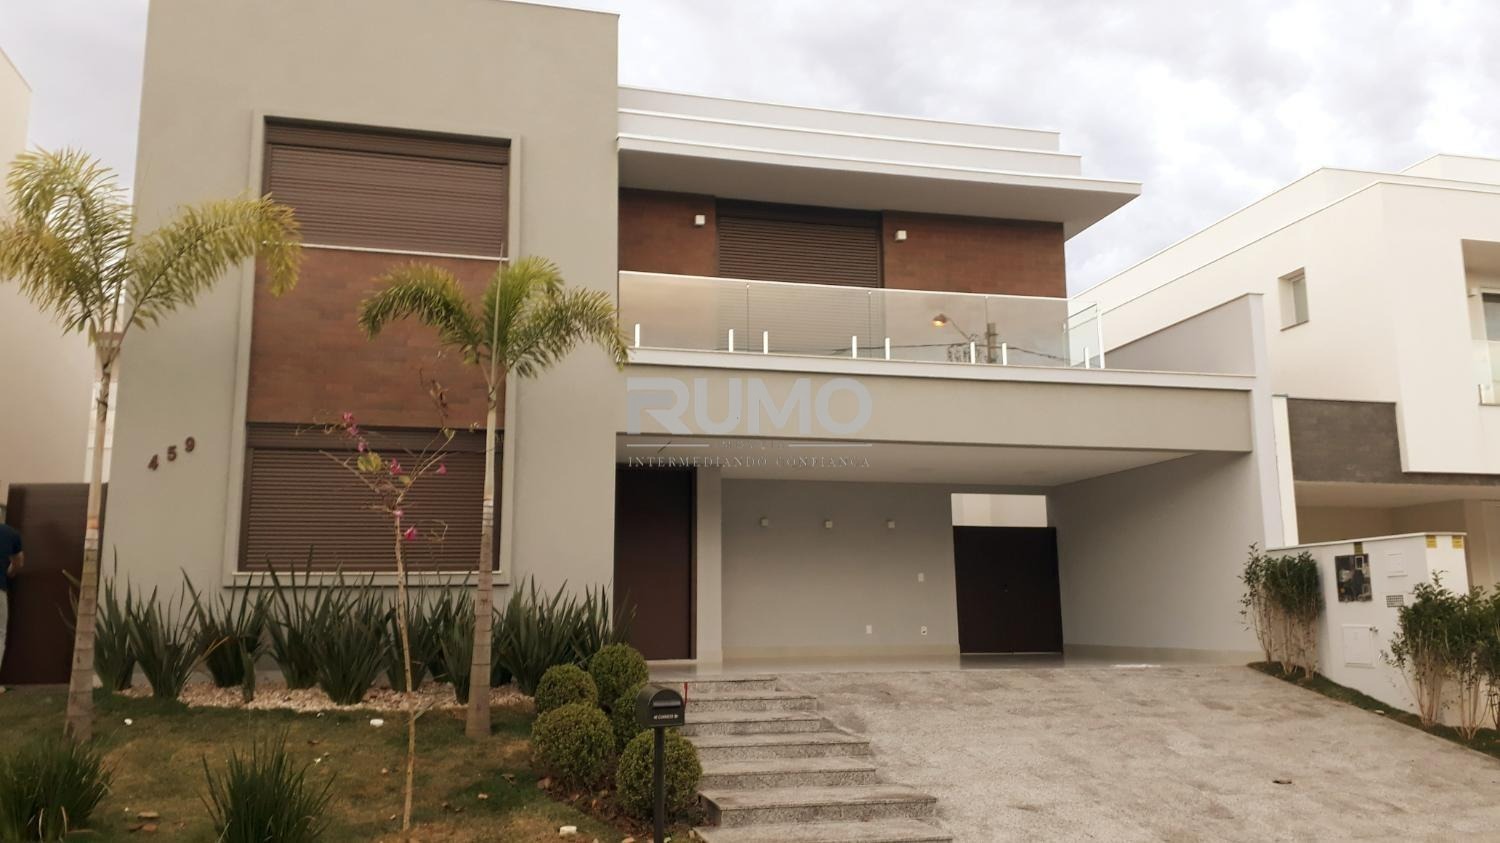 CA020233 | Casa aluguel Loteamento Parque dos Alecrins | Campinas/SP